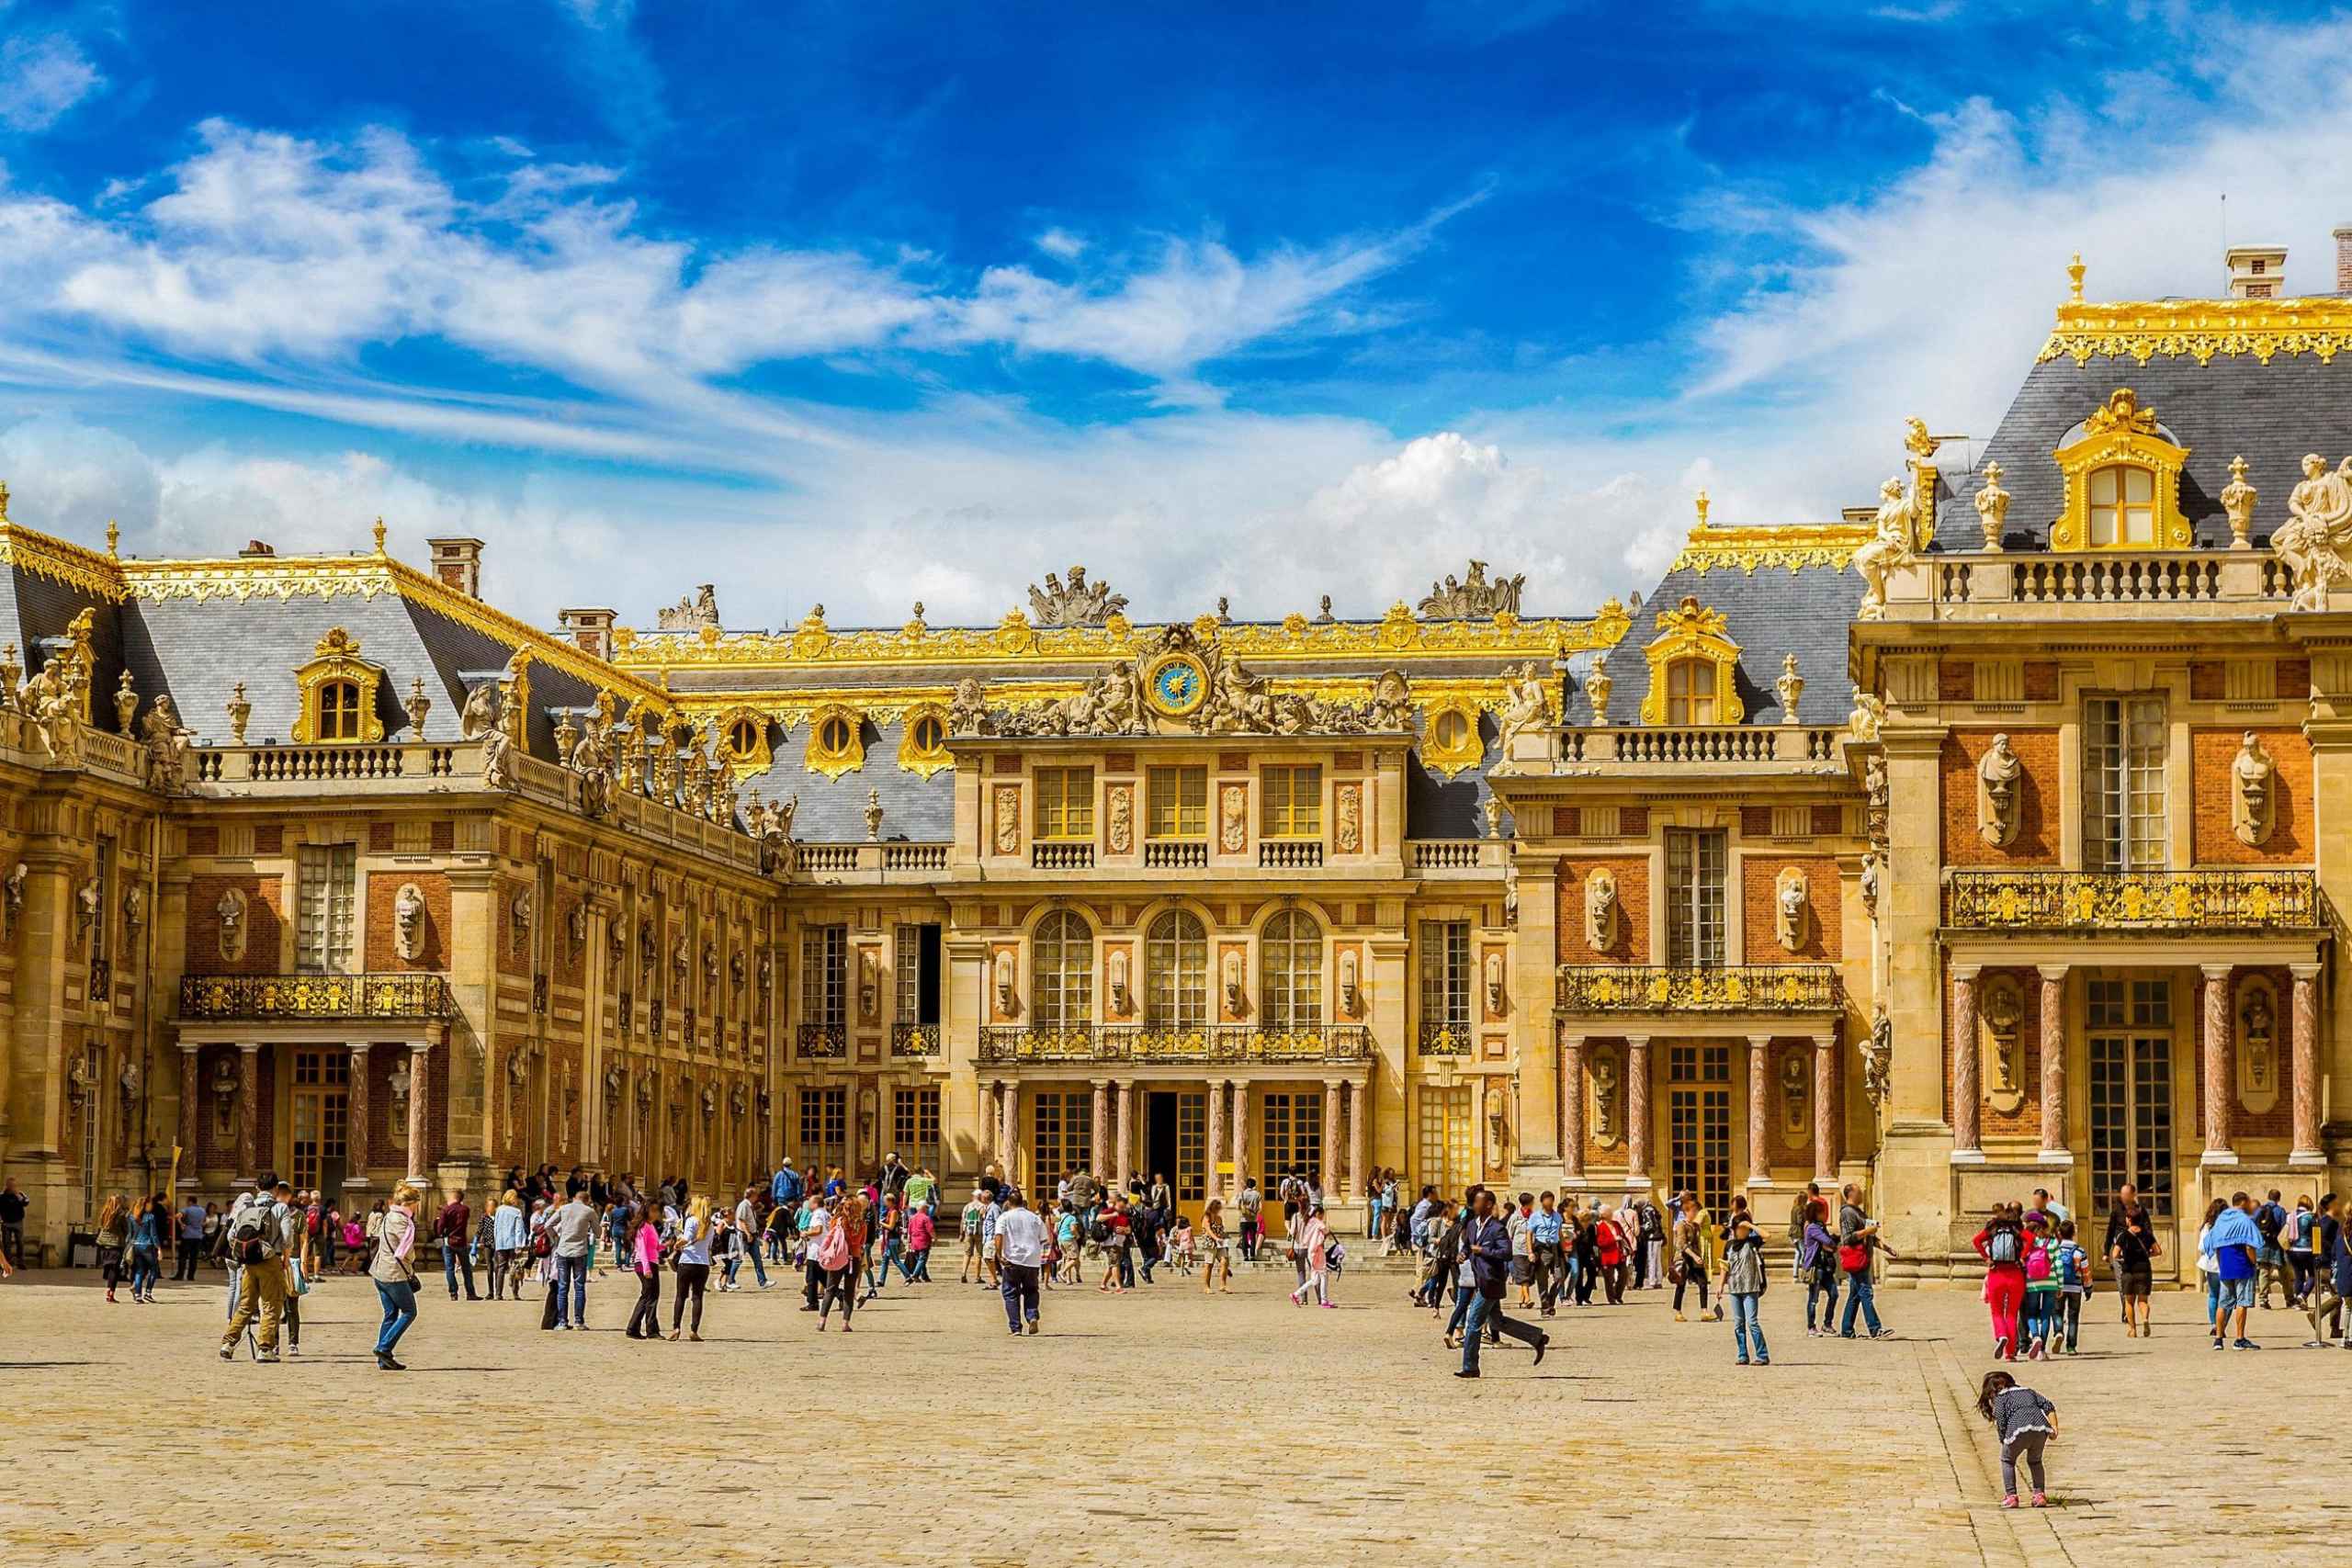 Версальский дворец в Париже. Версальский дворец Версаль Франция. Достопримечательности Парижа Версаль. Франция 17 век Версаль. Chateau de versailles